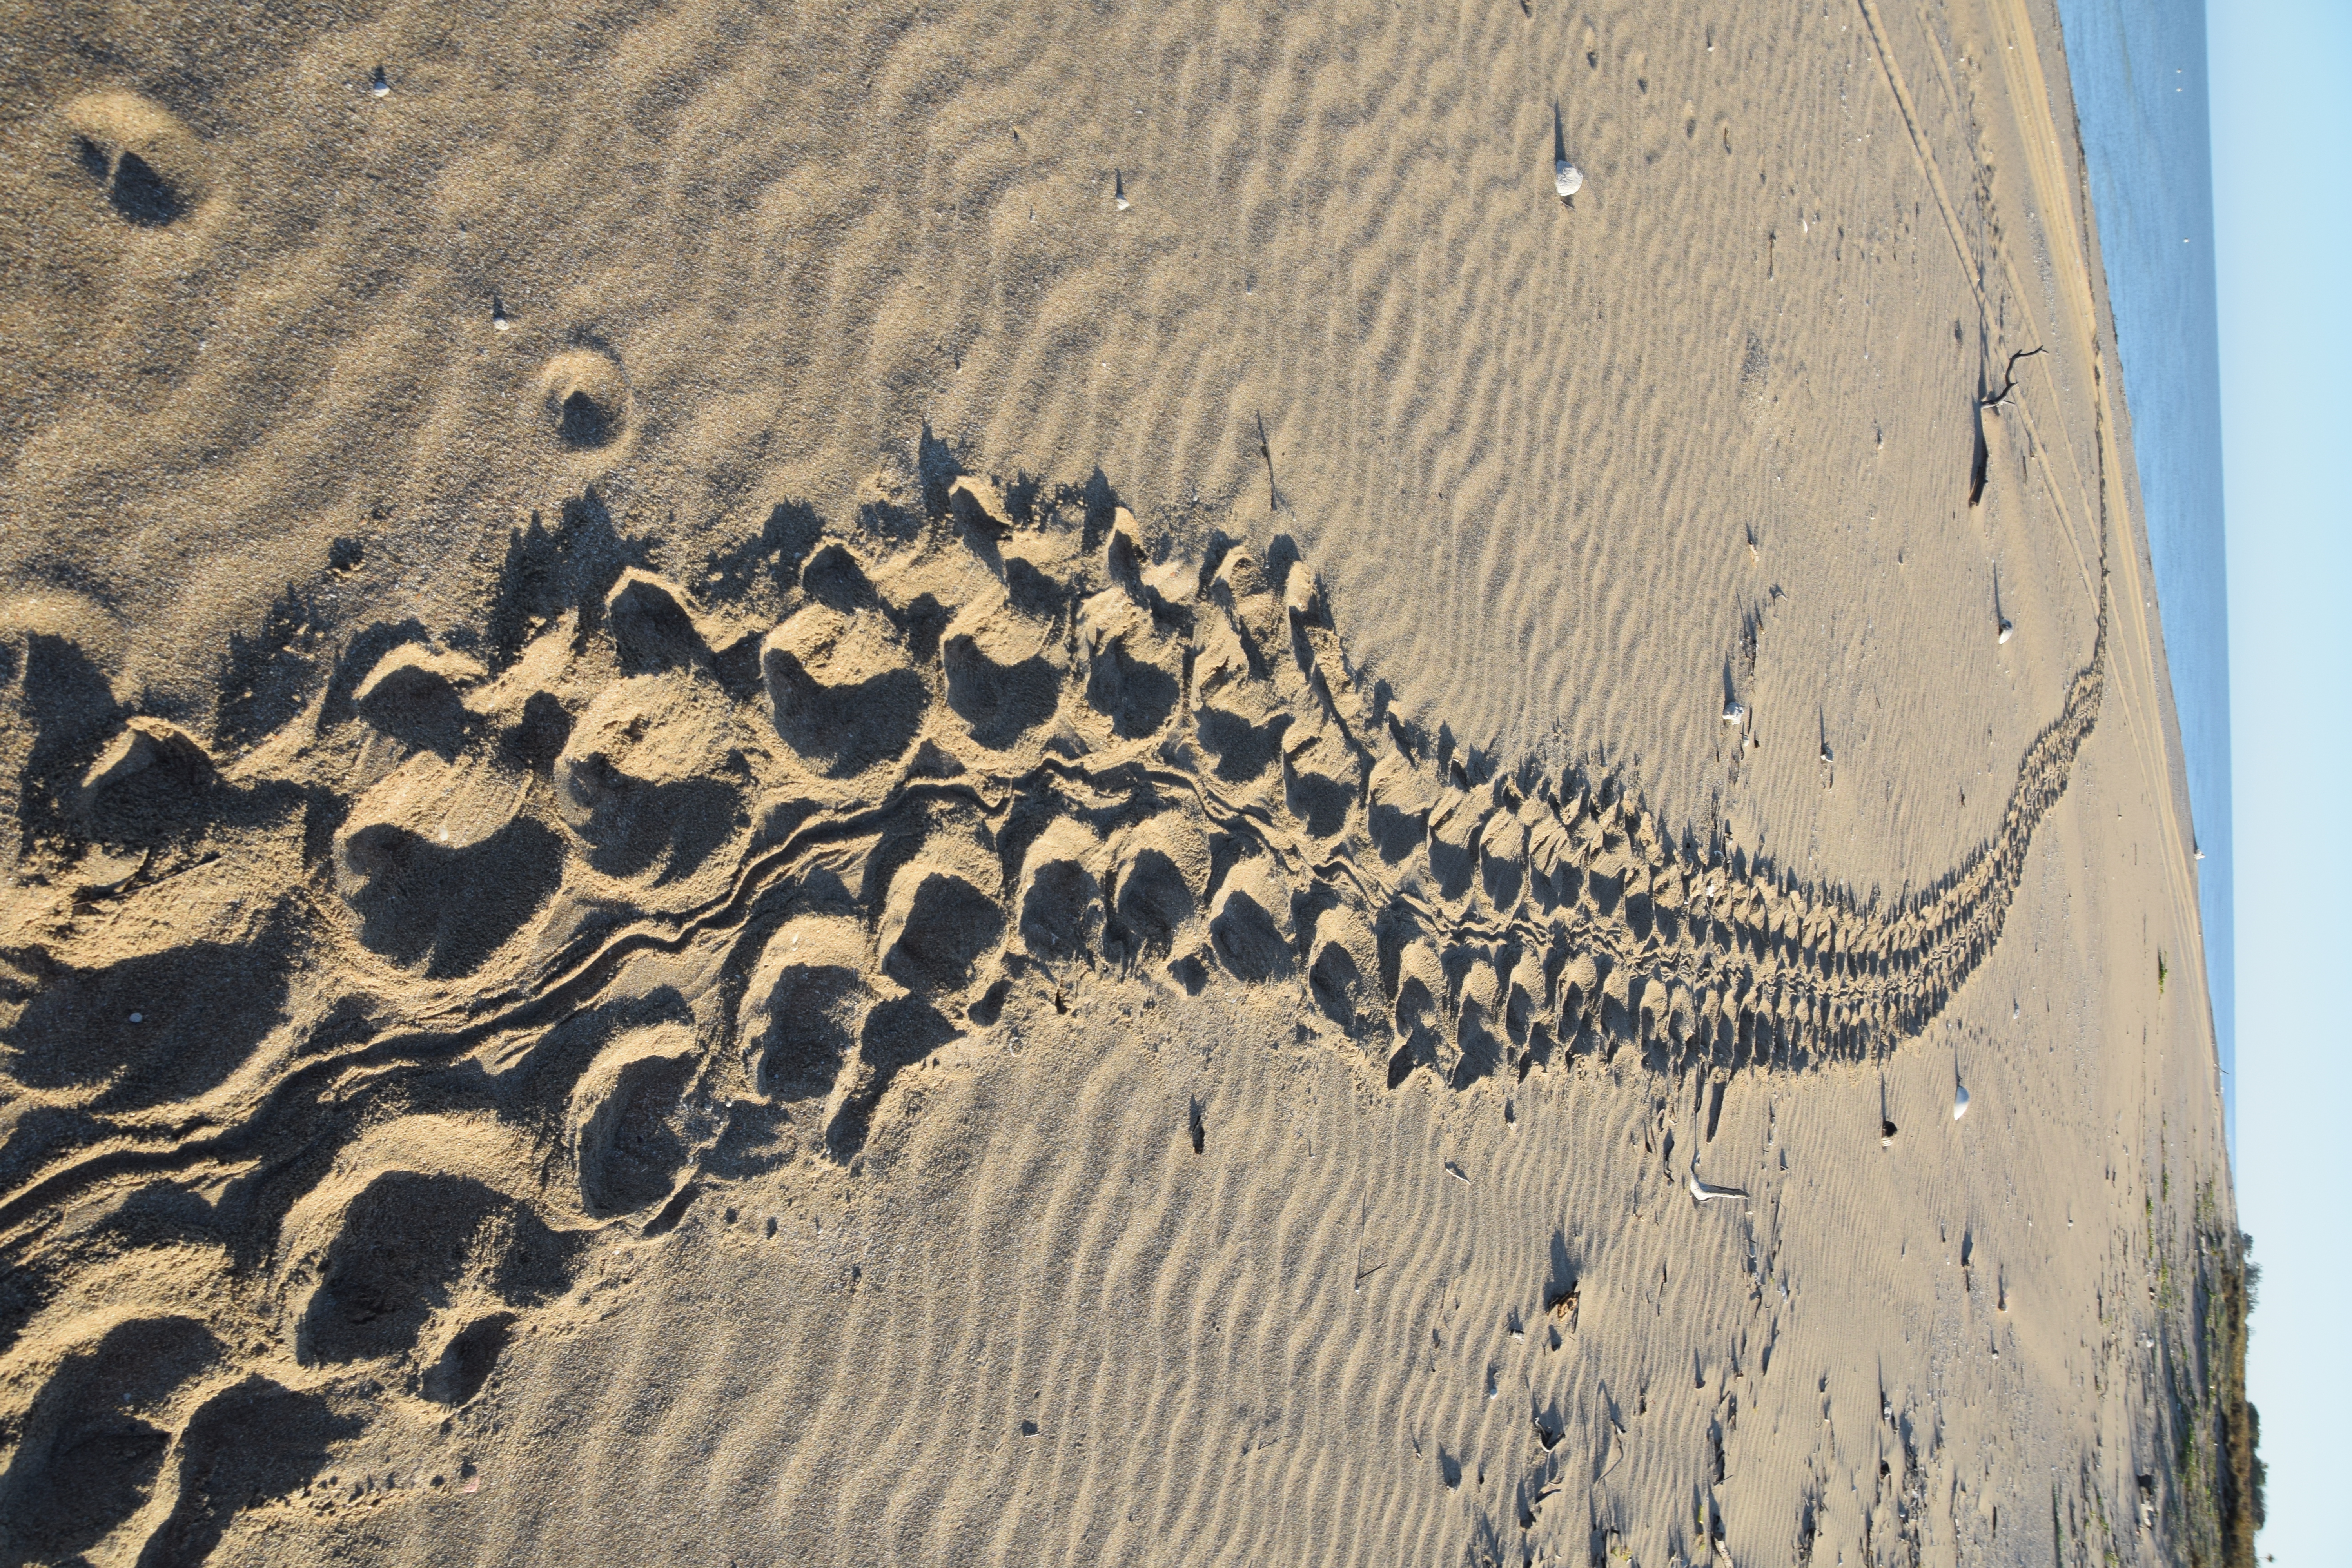 Image of turtle tracks